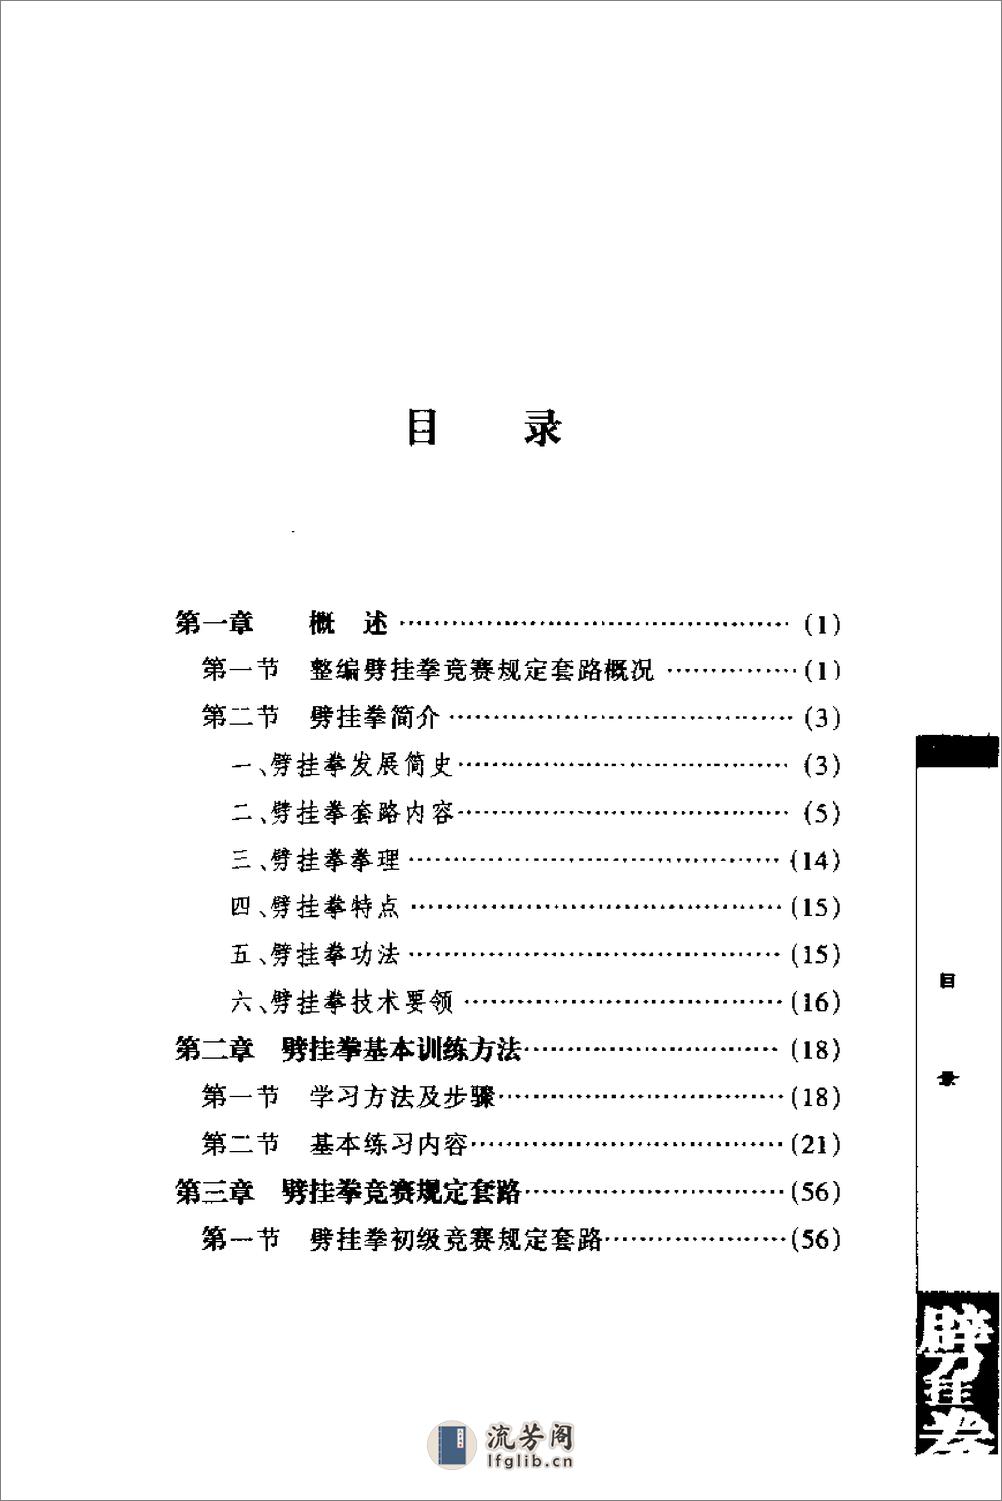 《劈挂拳》中国武术系列规定套路编写组 - 第5页预览图